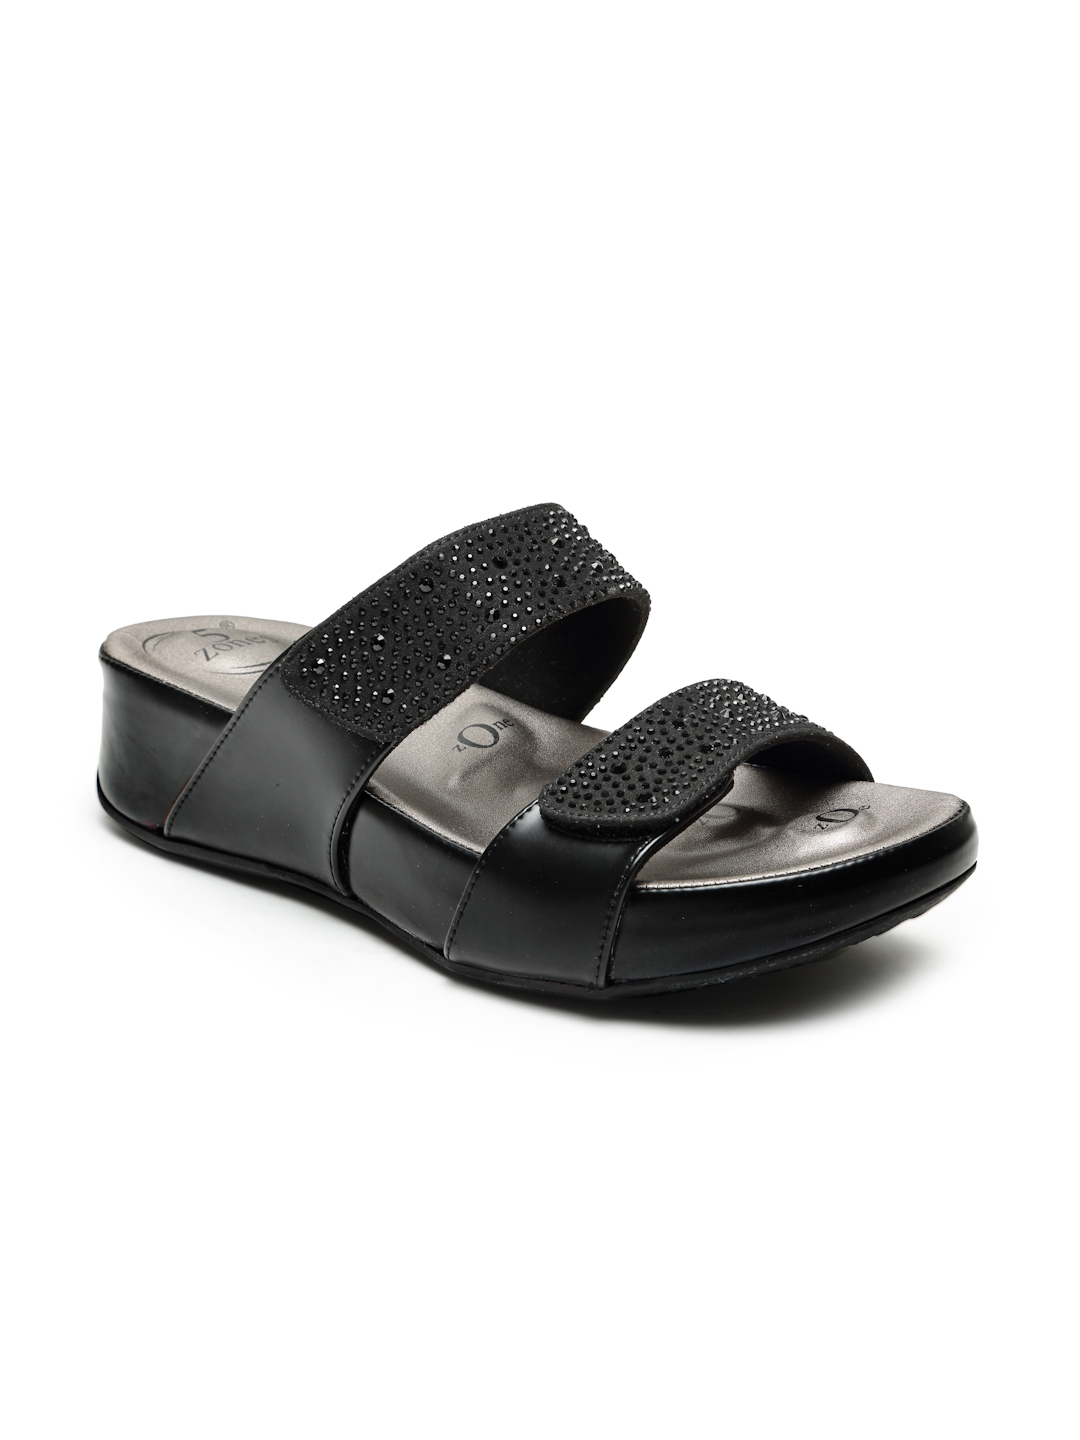 Buy VON WELLX GERMANY comfort women's black casual sandals PAULA In Delhi